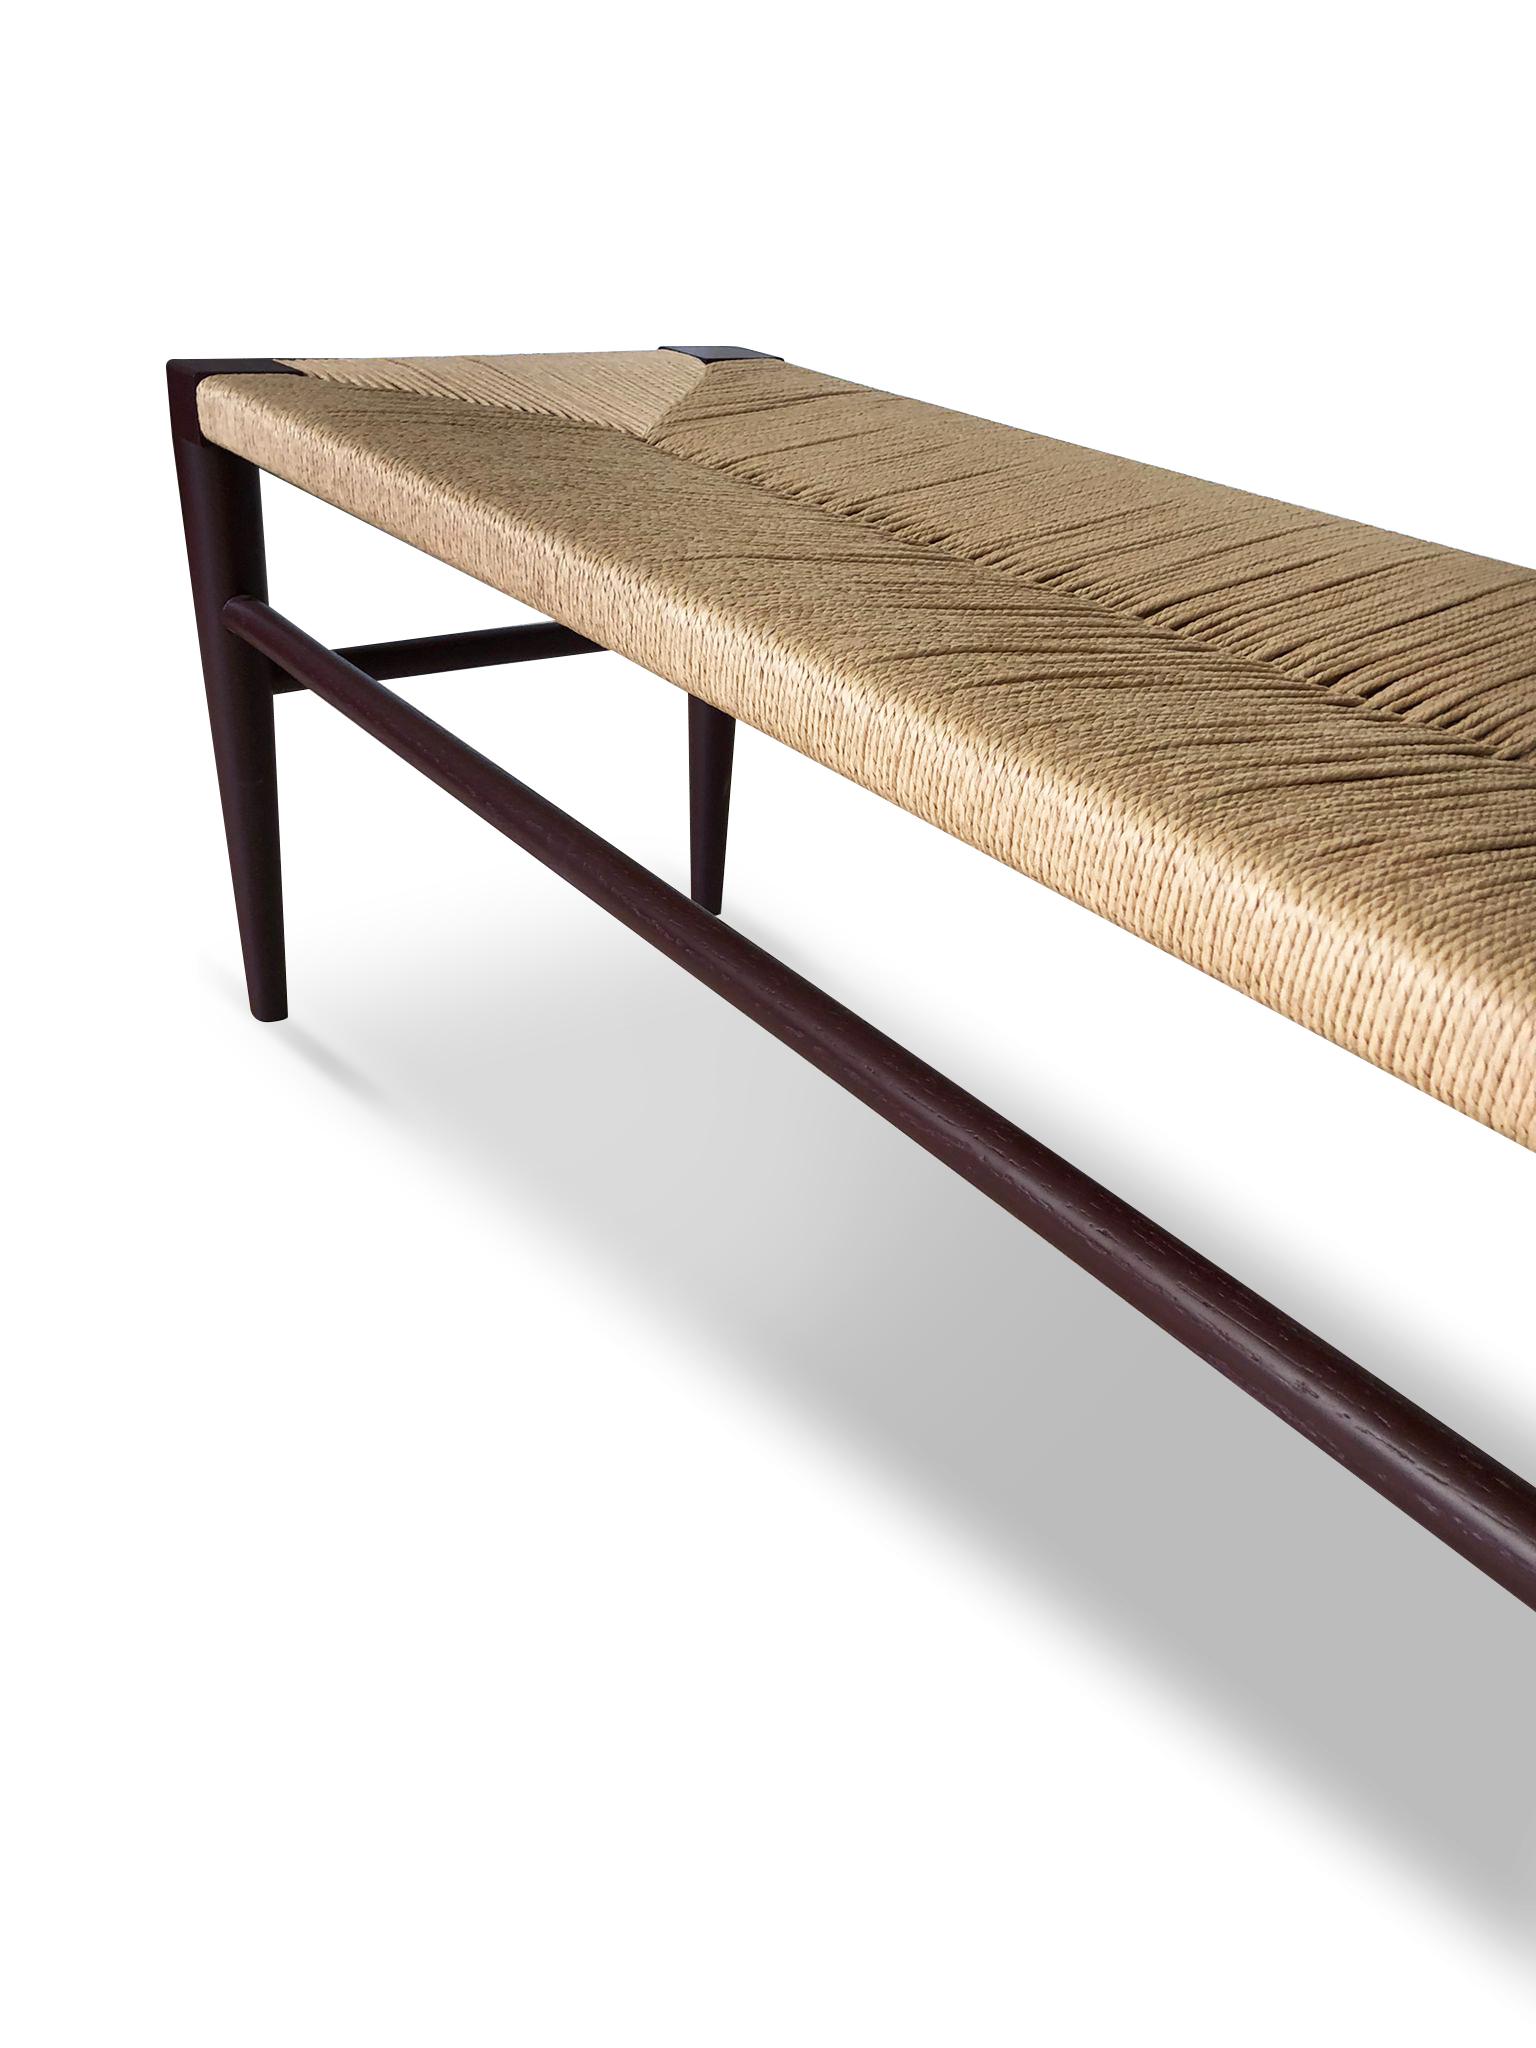 Portuguese 21st Century Designed Bench Stool Oak Wood Rope